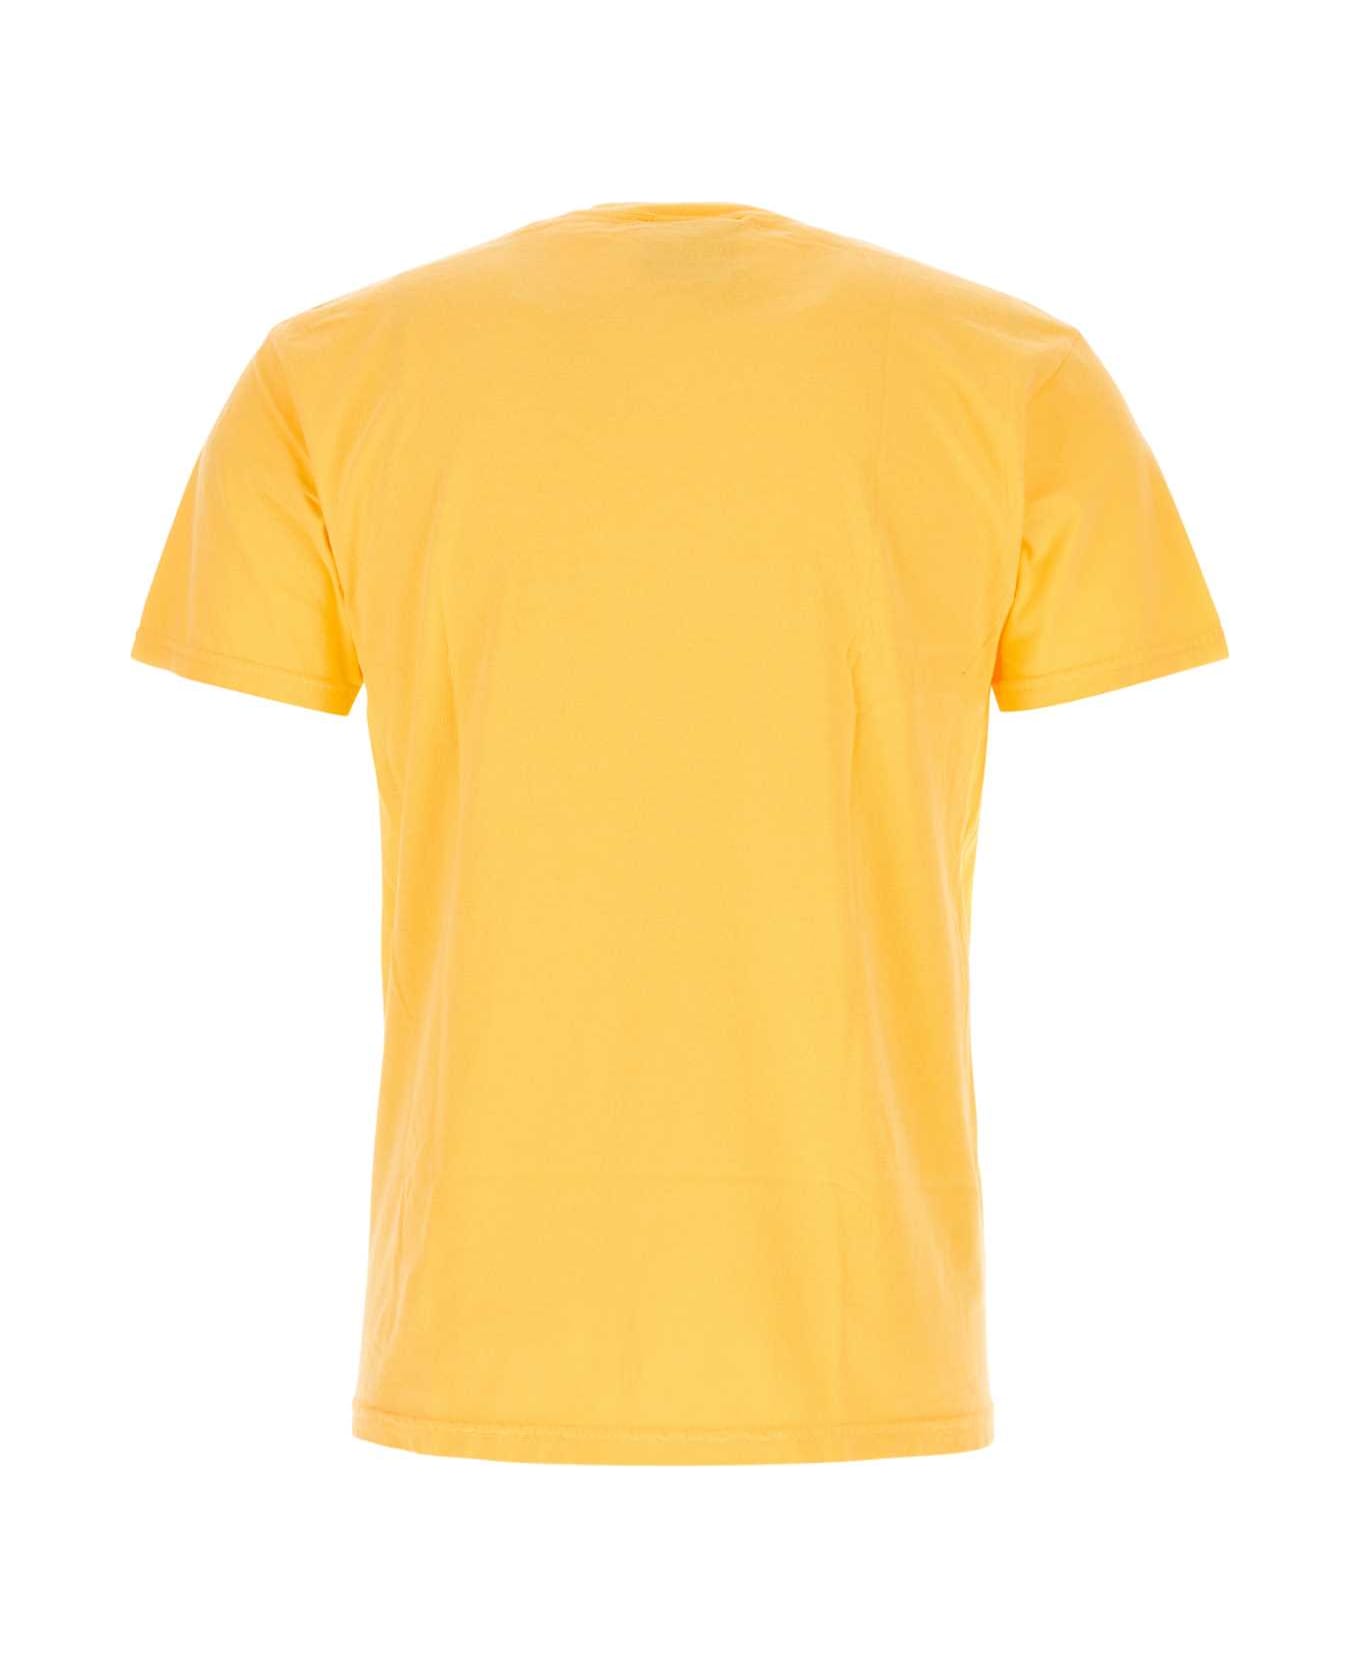 Kidsuper Yellow Cotton T-shirt - THECONARTISTORANGE シャツ